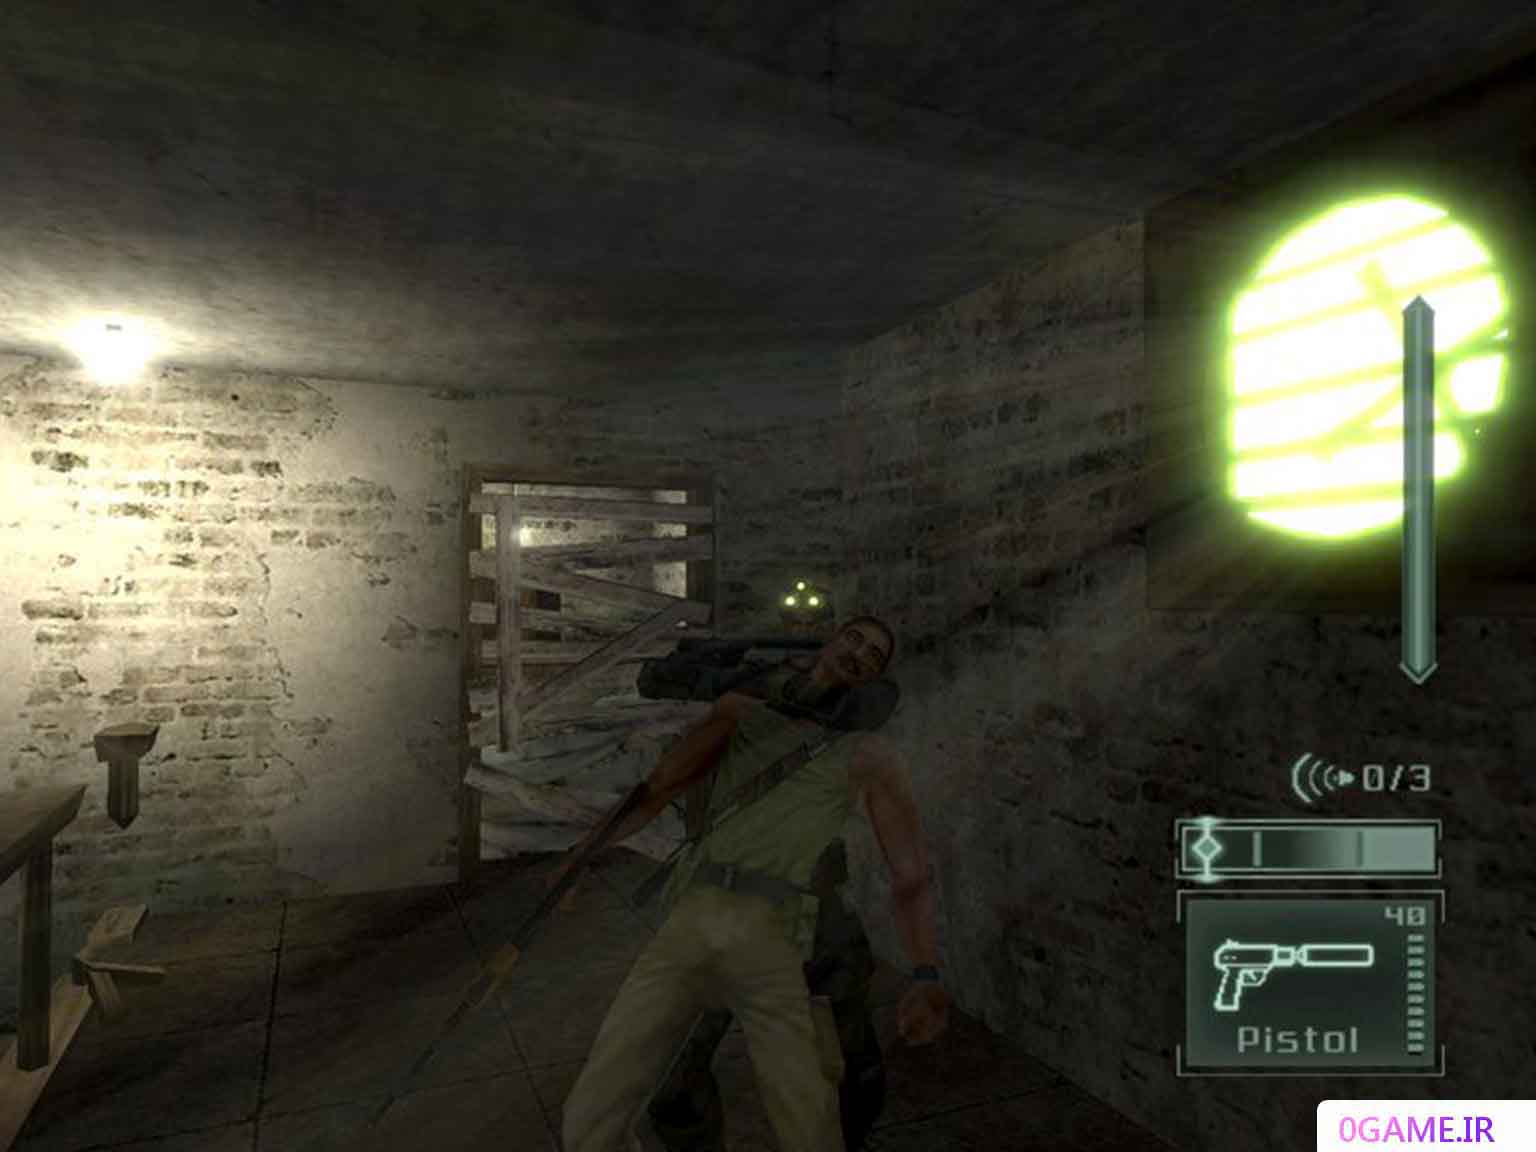 دانلود بازی اسپلینتر سل 2 (Tom Clancy's Splinter Cell) نسخه کامل برای کامپیوتر